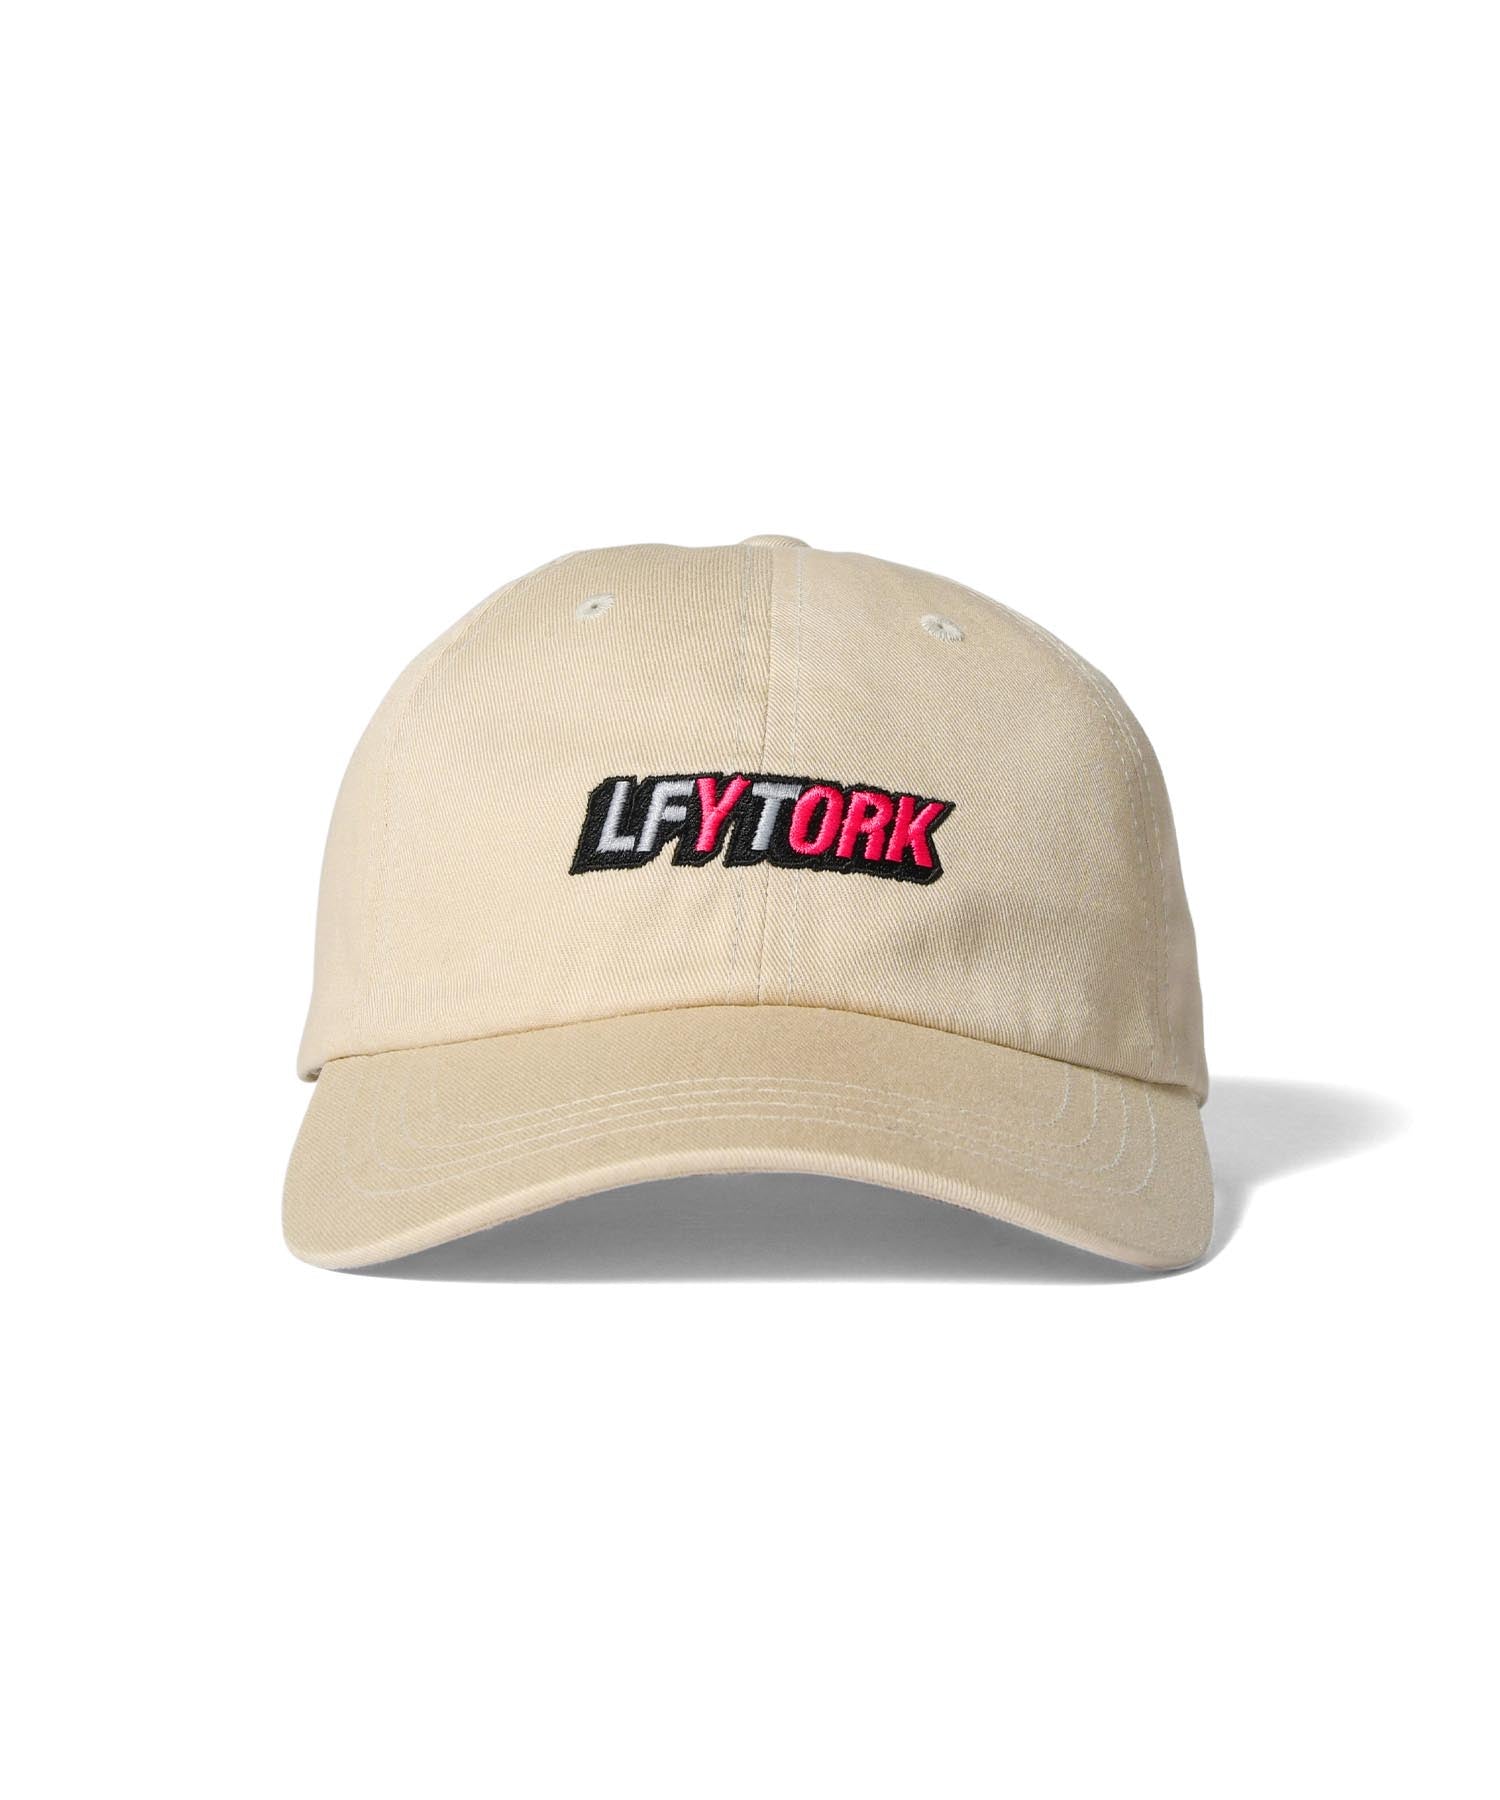 LFYTORK DAD HAT LS221413 BEIGE